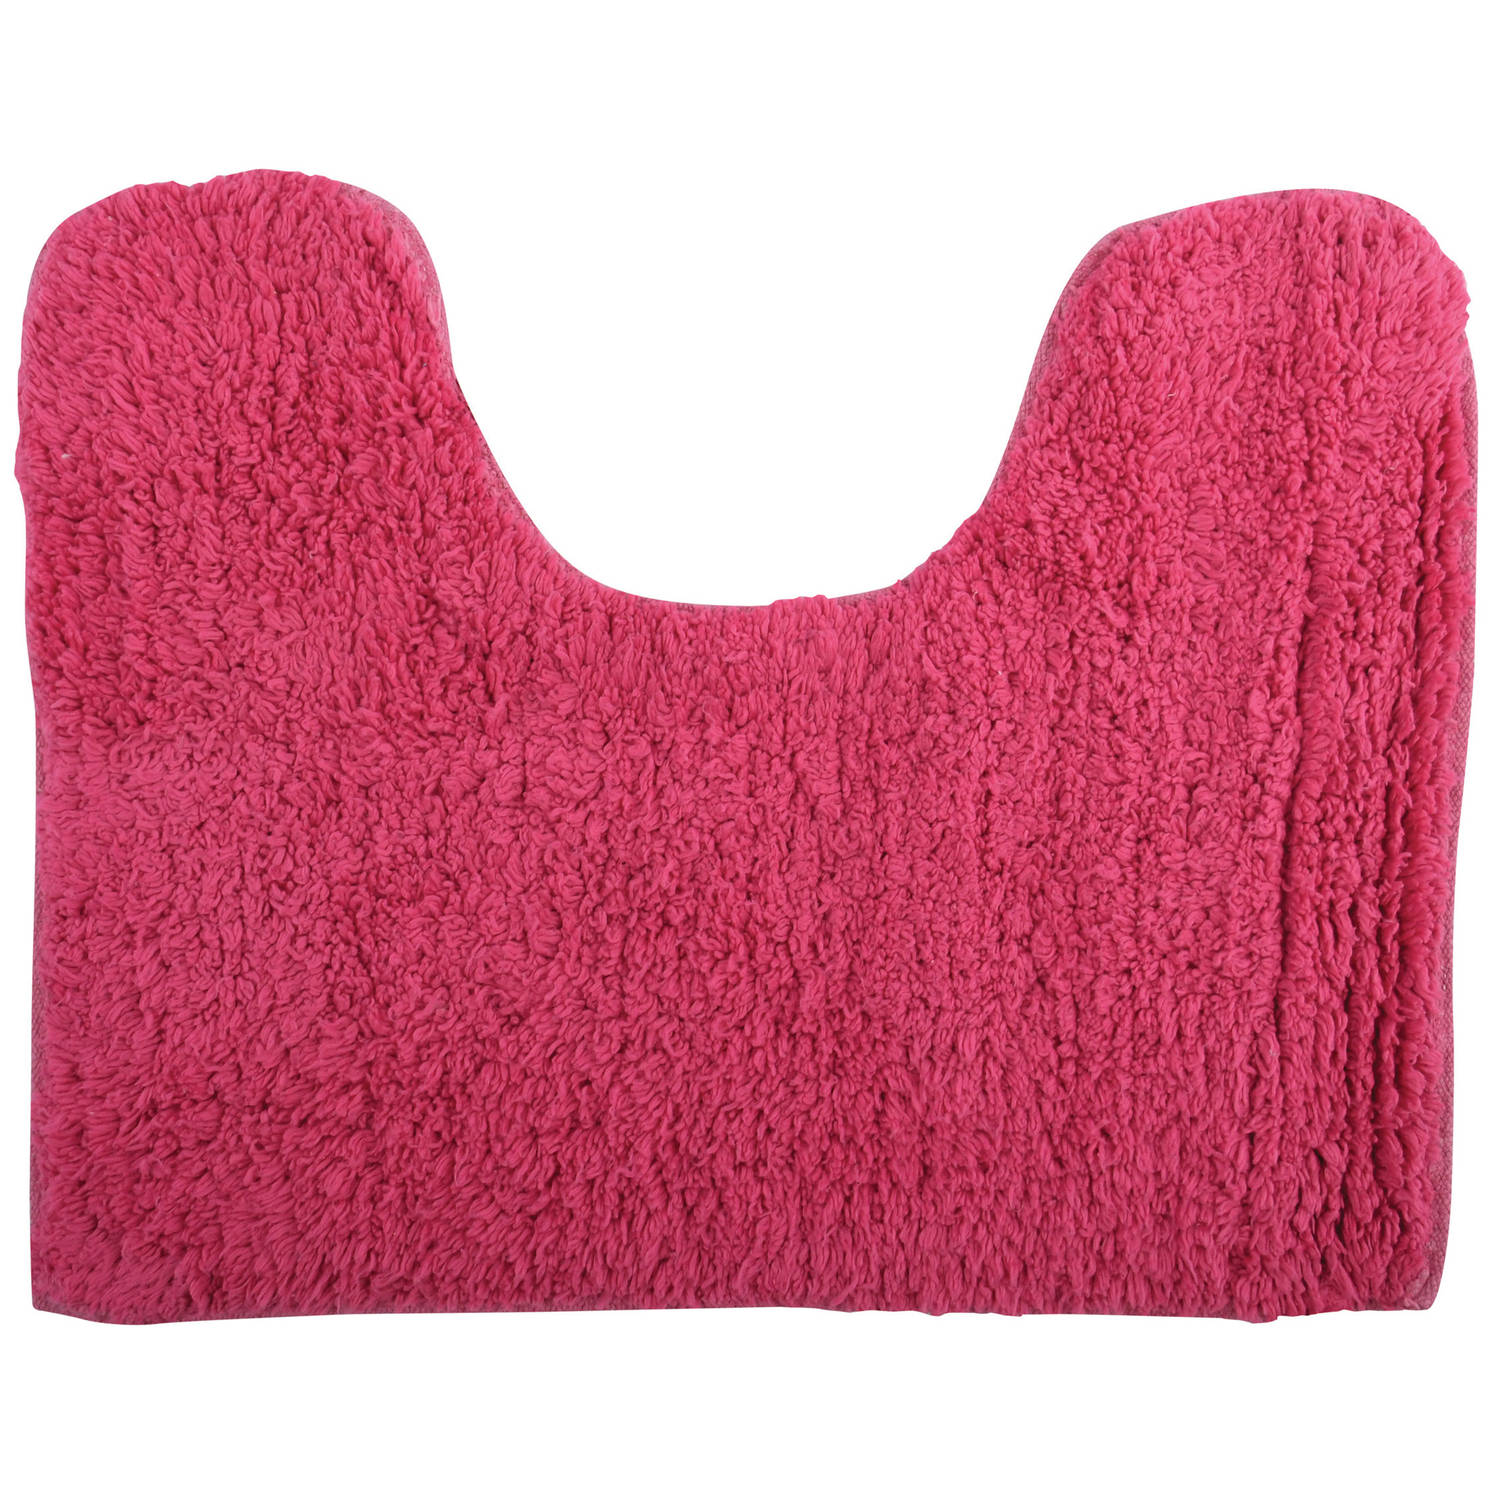 Msv Wc-badkamerkleed-badmat Voor Op De Vloer Fuchsia Roze 45 X 35 Cm